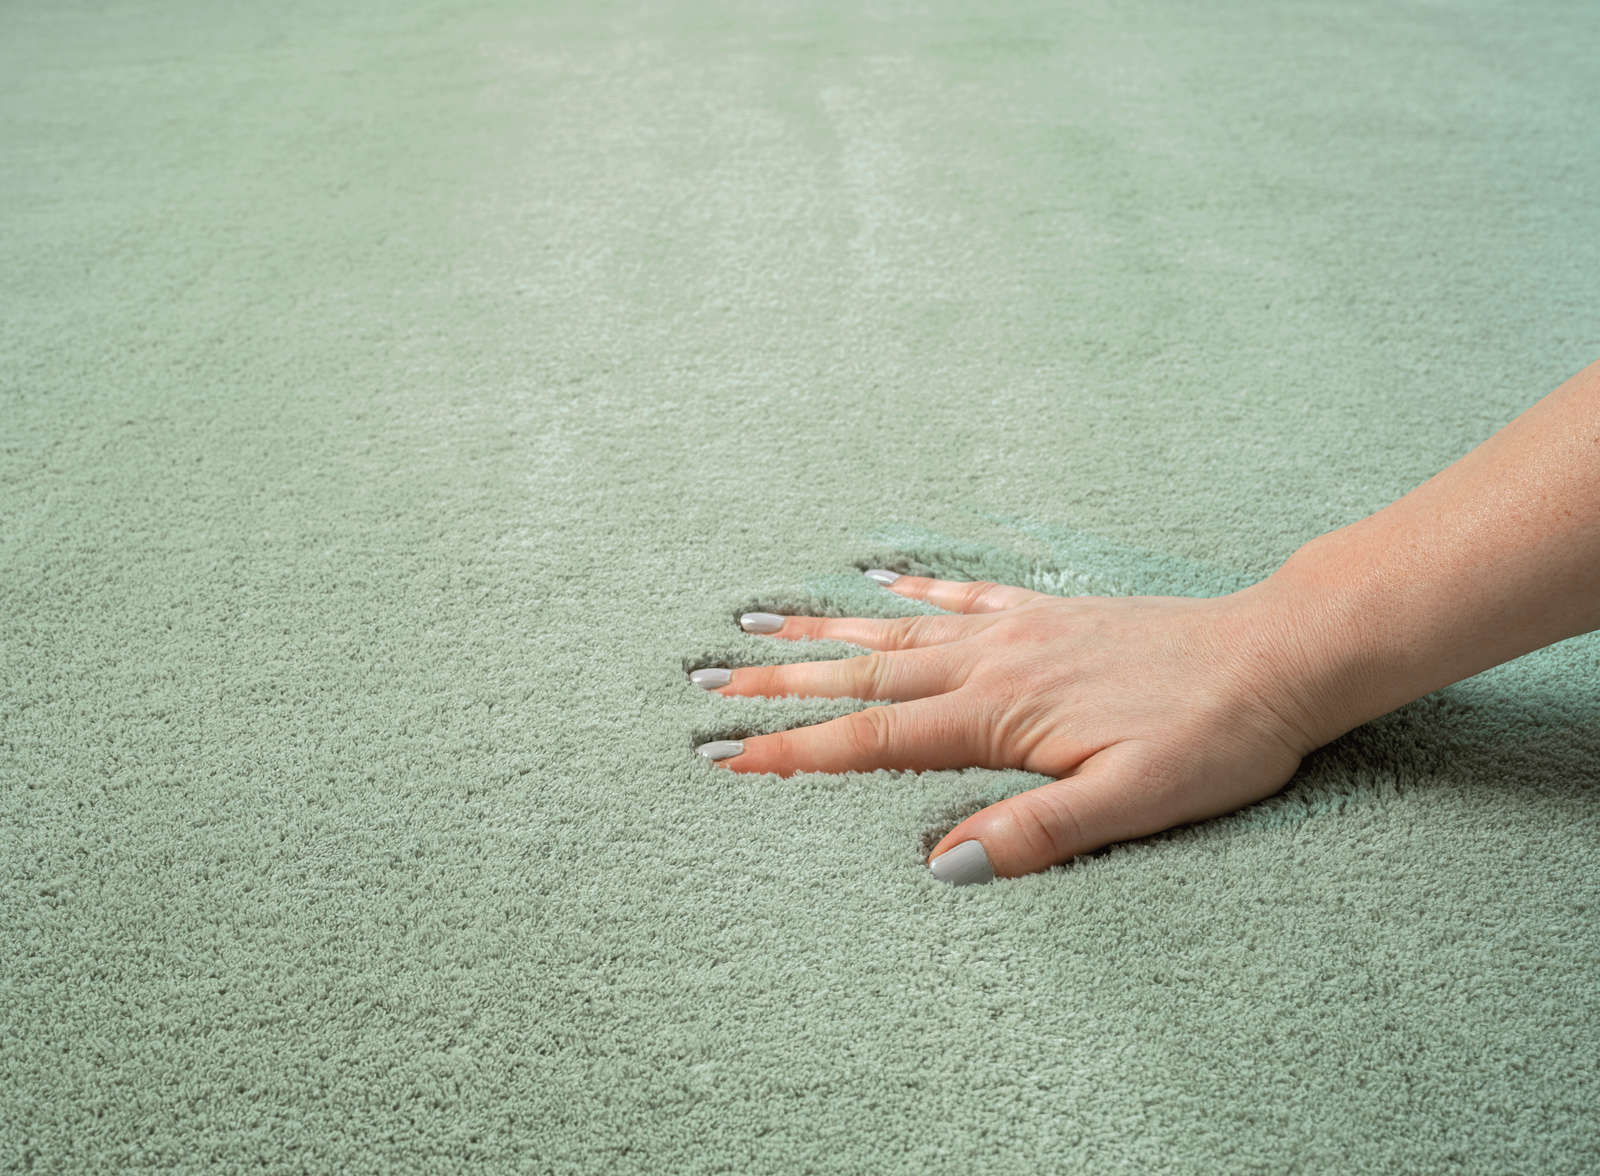             Soft Shaggy Carpet Round in Green - Ø 120 cm
        